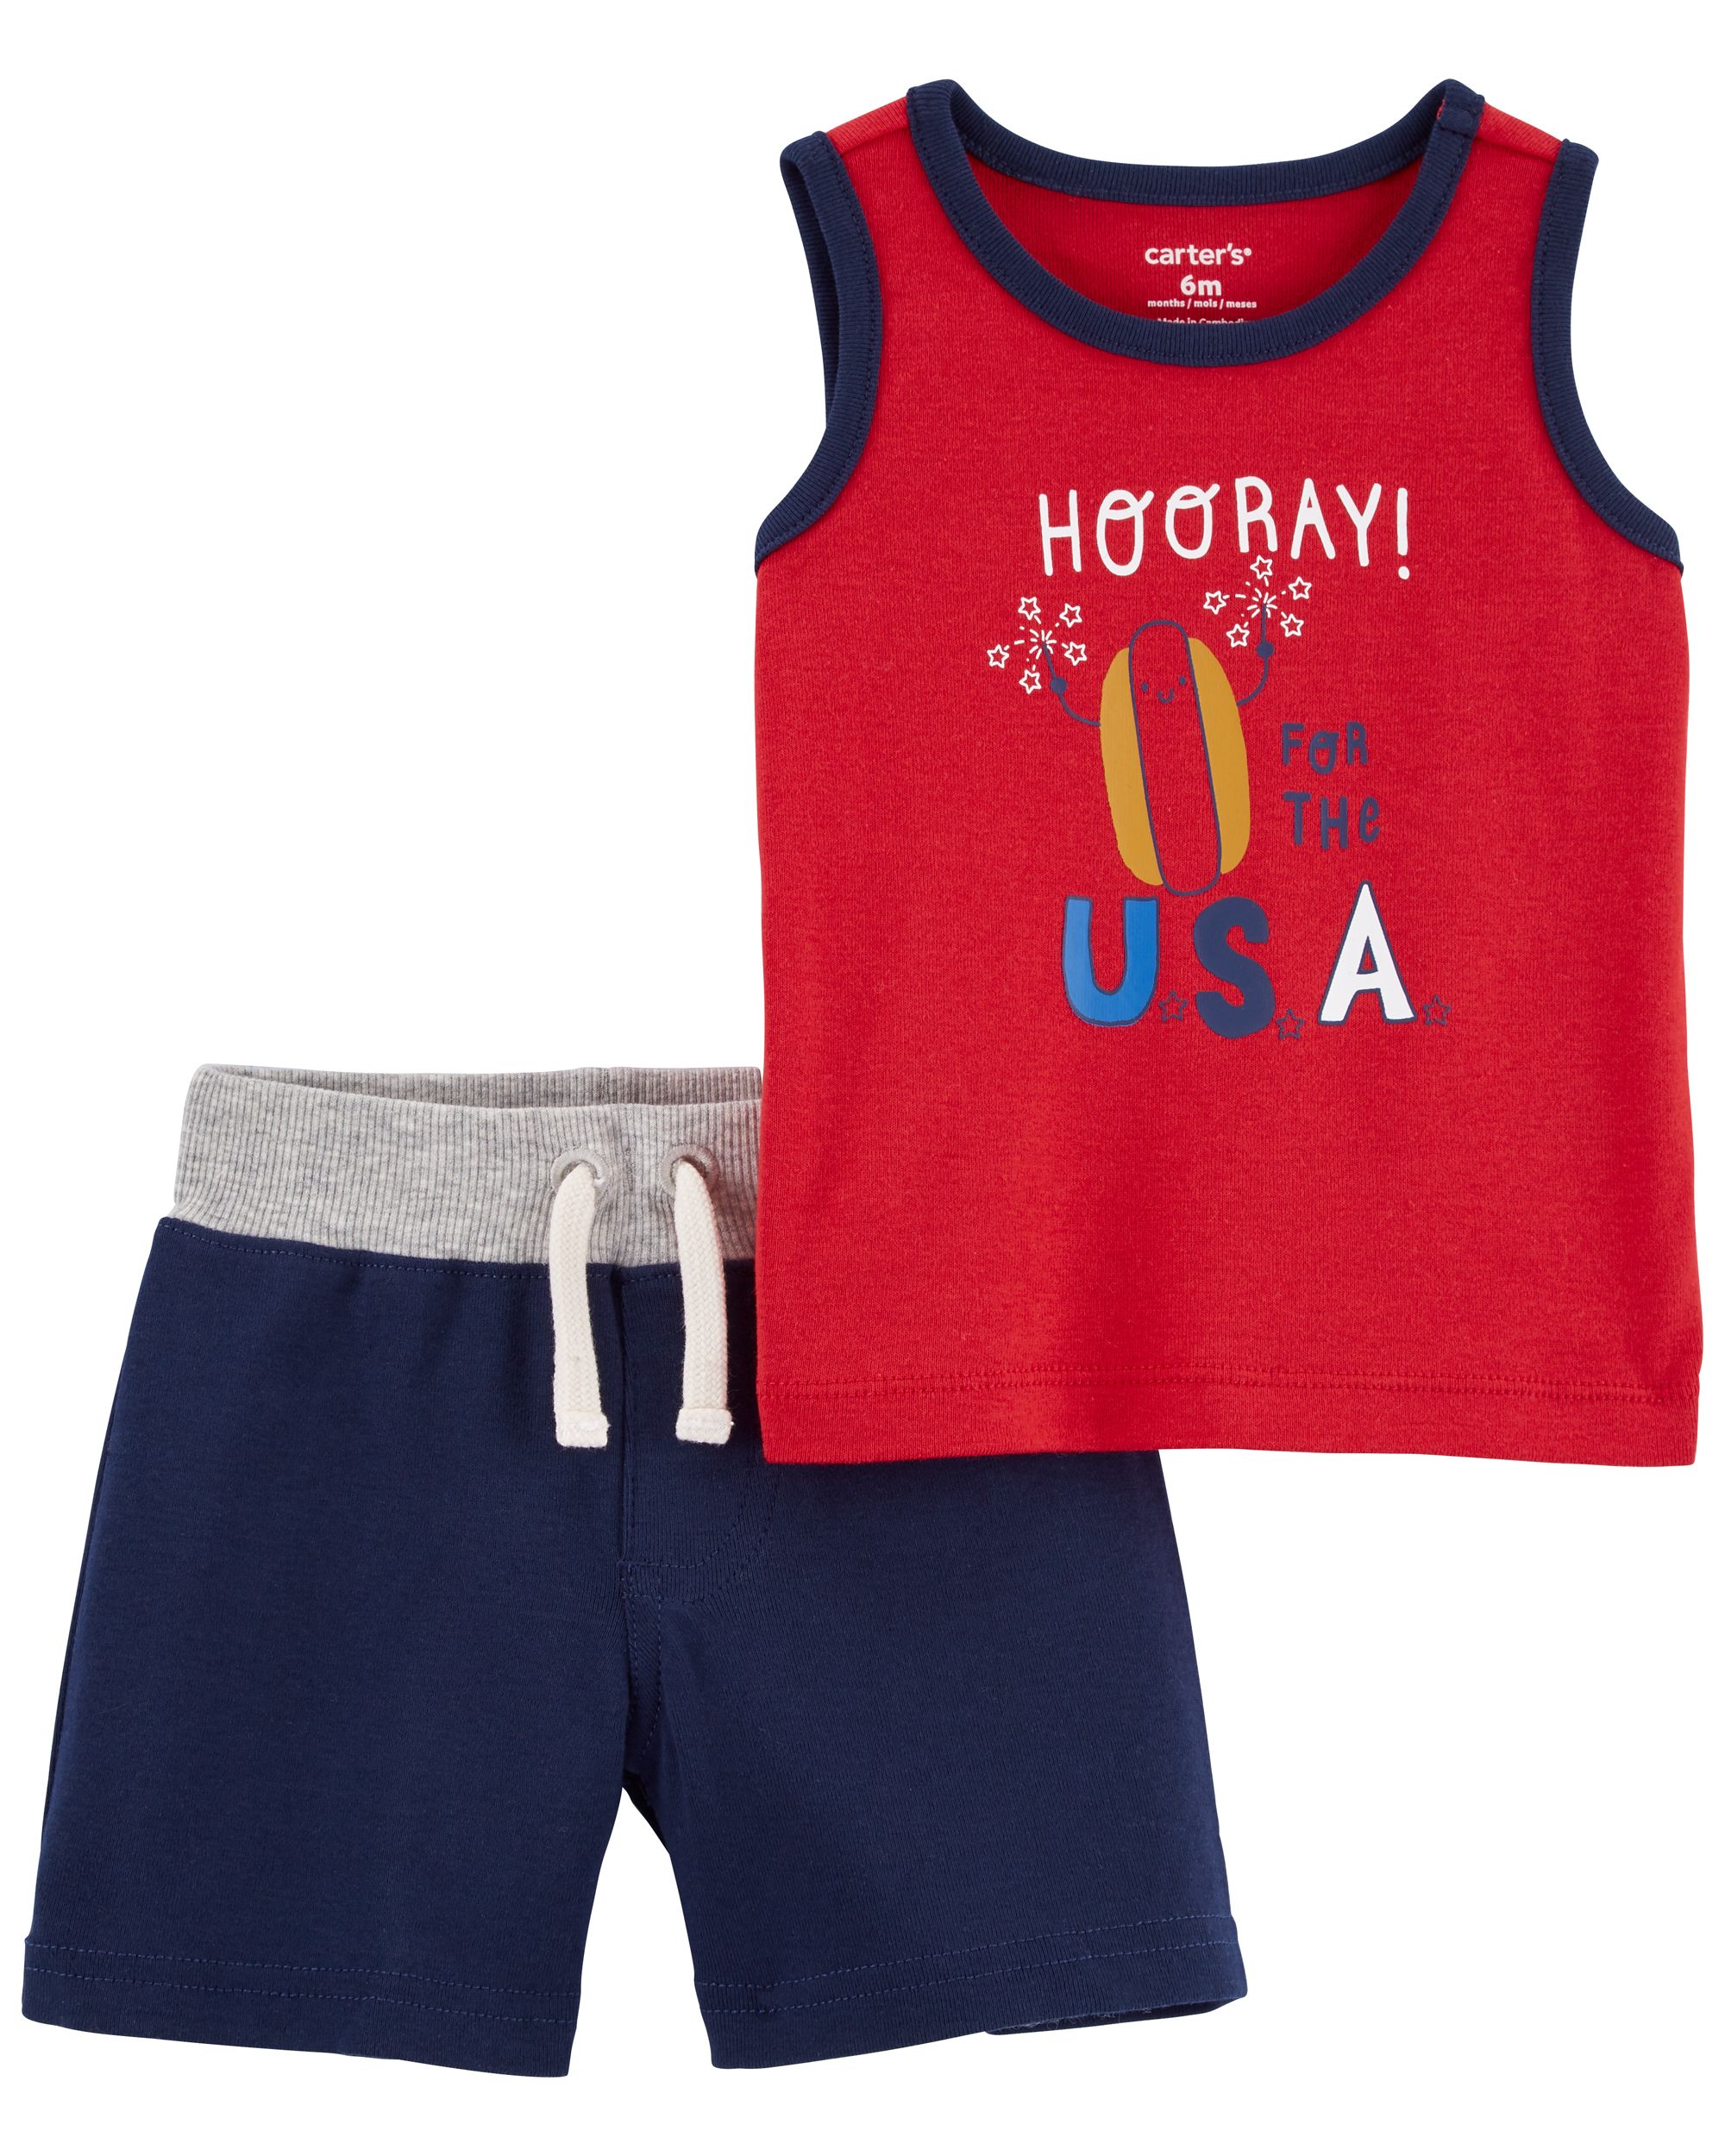 2-Piece Hooray USA Outfit Set | Carter's